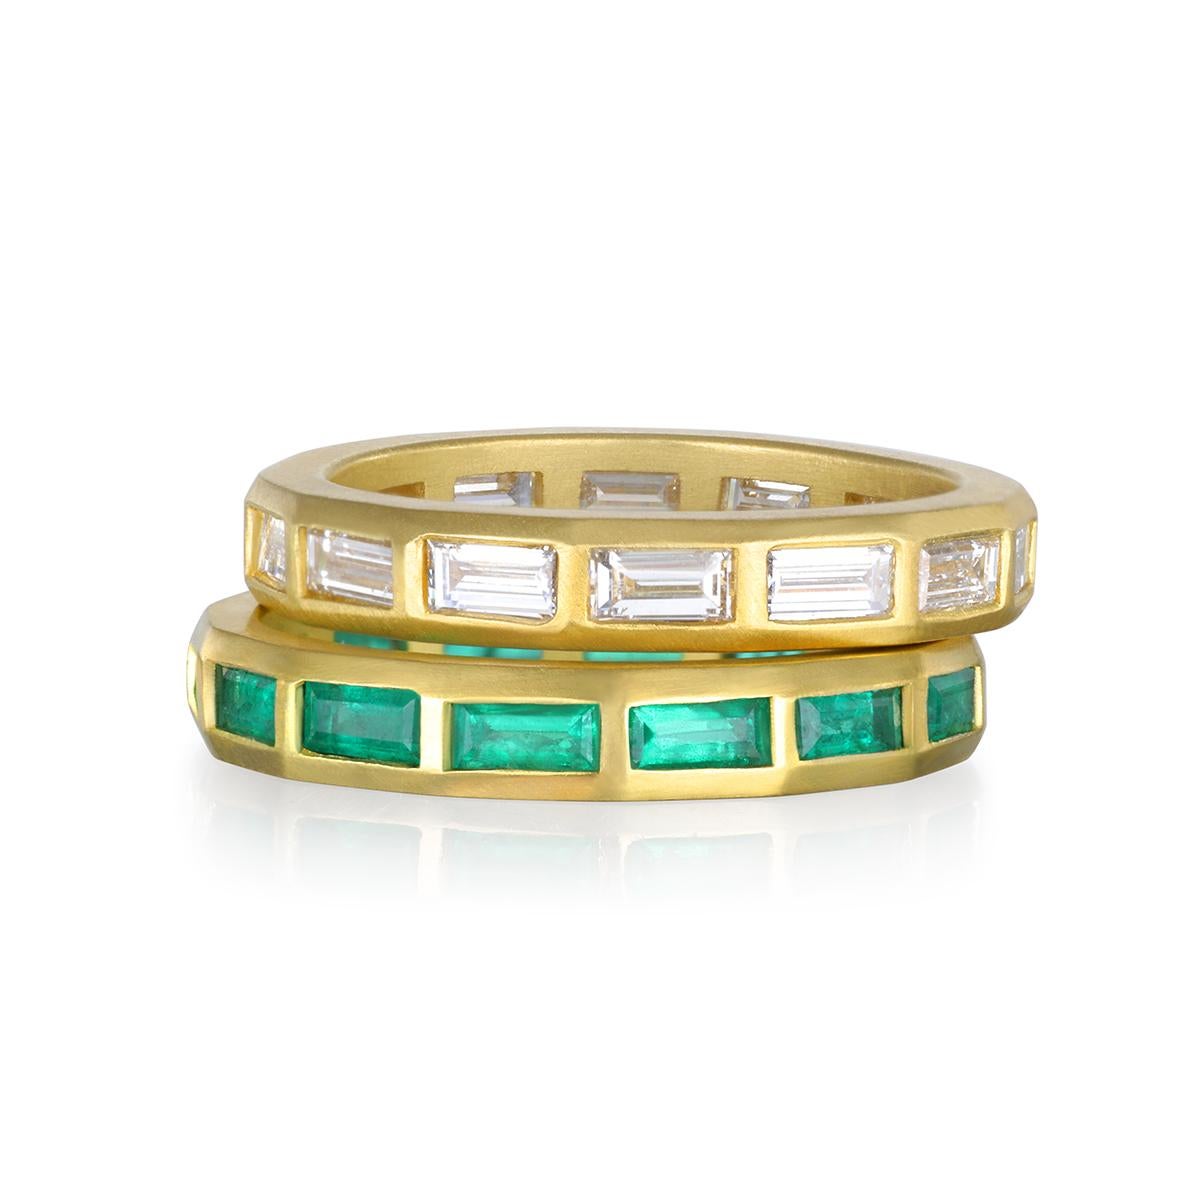 Das Smaragd-Baguette-Ewigkeitsband von Faye Kim aus 18 Karat Gold ist eine klare, frische und moderne Interpretation des Diamant-Ewigkeitsbands. Es lässt sich perfekt mit anderen Ringen stapeln und bietet viele Möglichkeiten, es zu tragen und zu